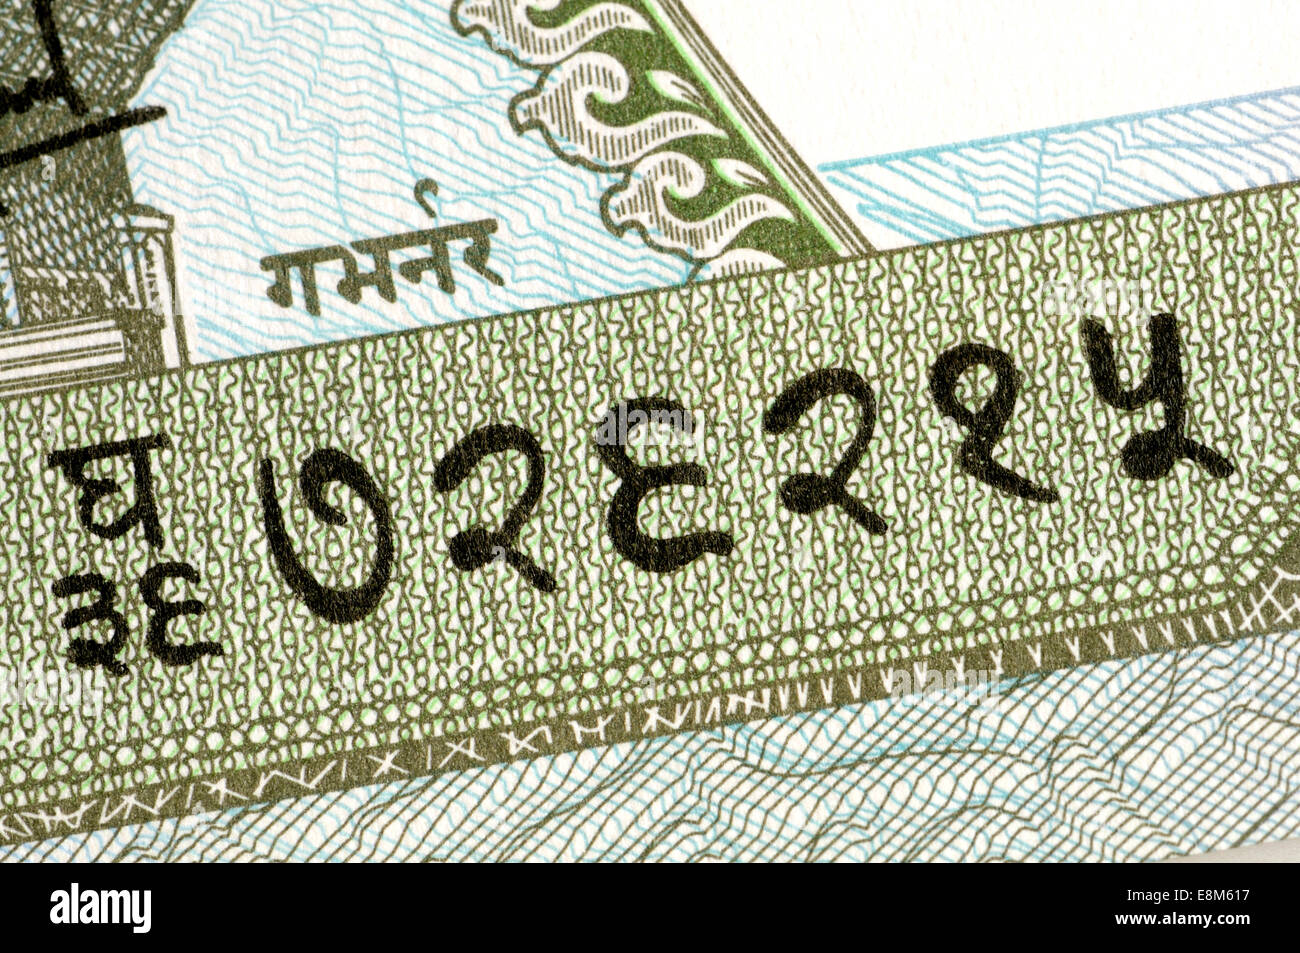 Détail d'un billet népalais le numéro en népalais des chiffres (726215) Banque D'Images